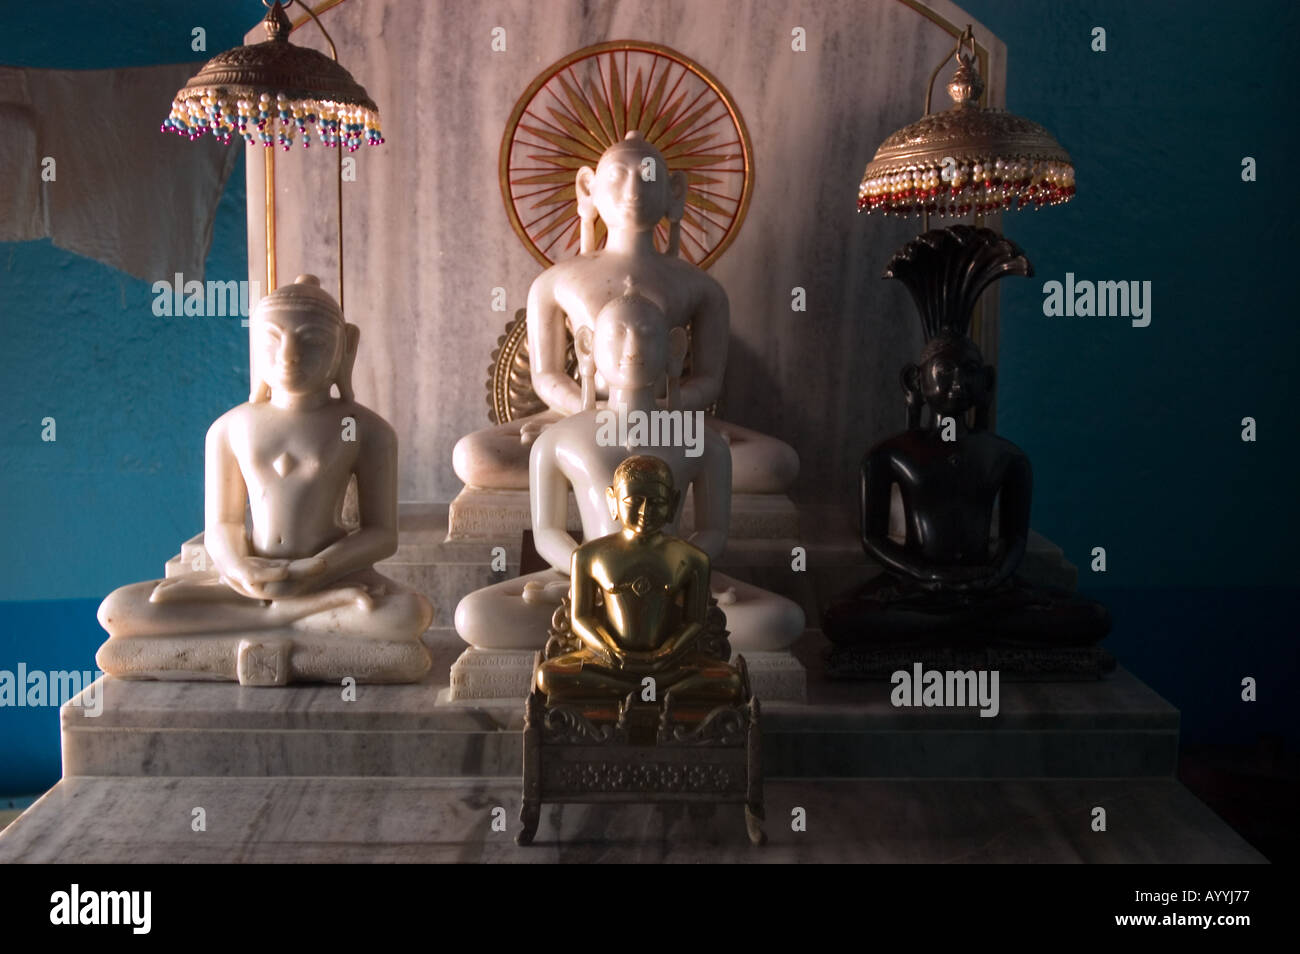 Jain temple interior statues of Mahavira or Mahavir Varanasi Uttar Pradesh India Stock Photo